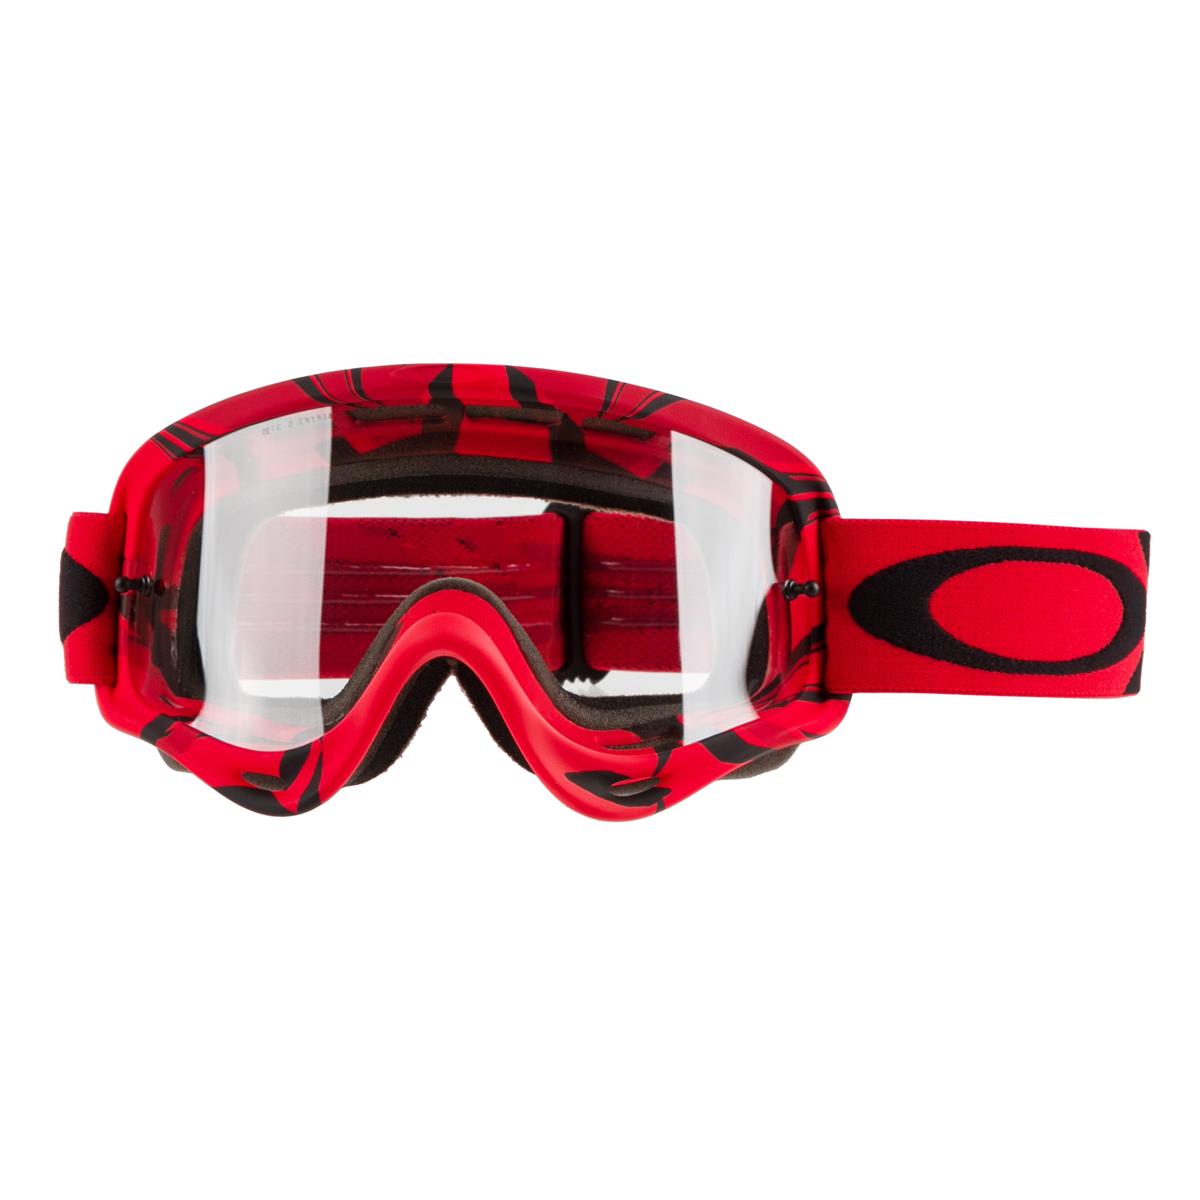 Oakley Maschera O Frame MX Intimidator Red/Black - Clear Anti-Fog